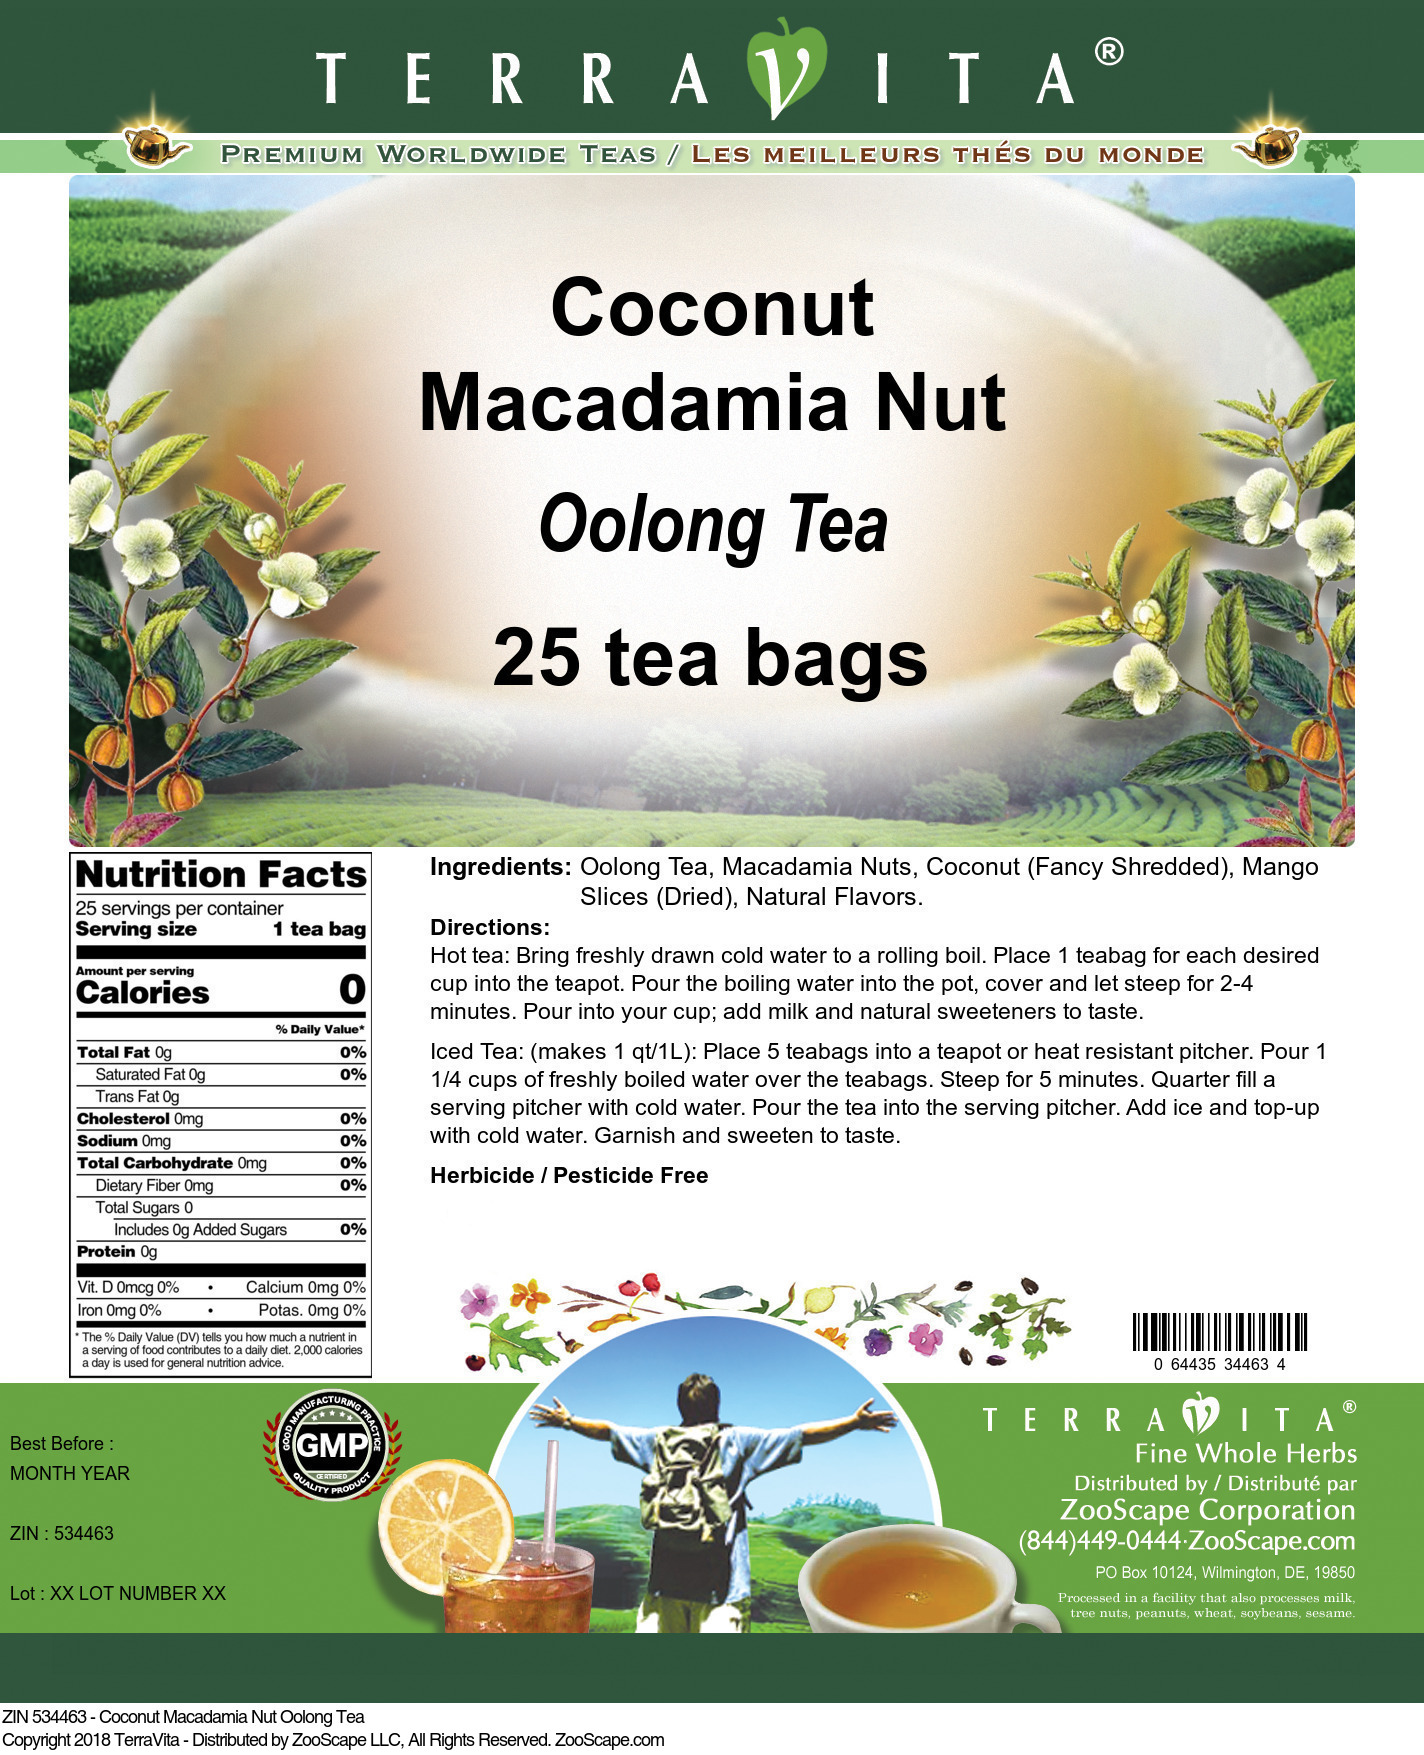 Coconut Macadamia Nut Oolong Tea - Label